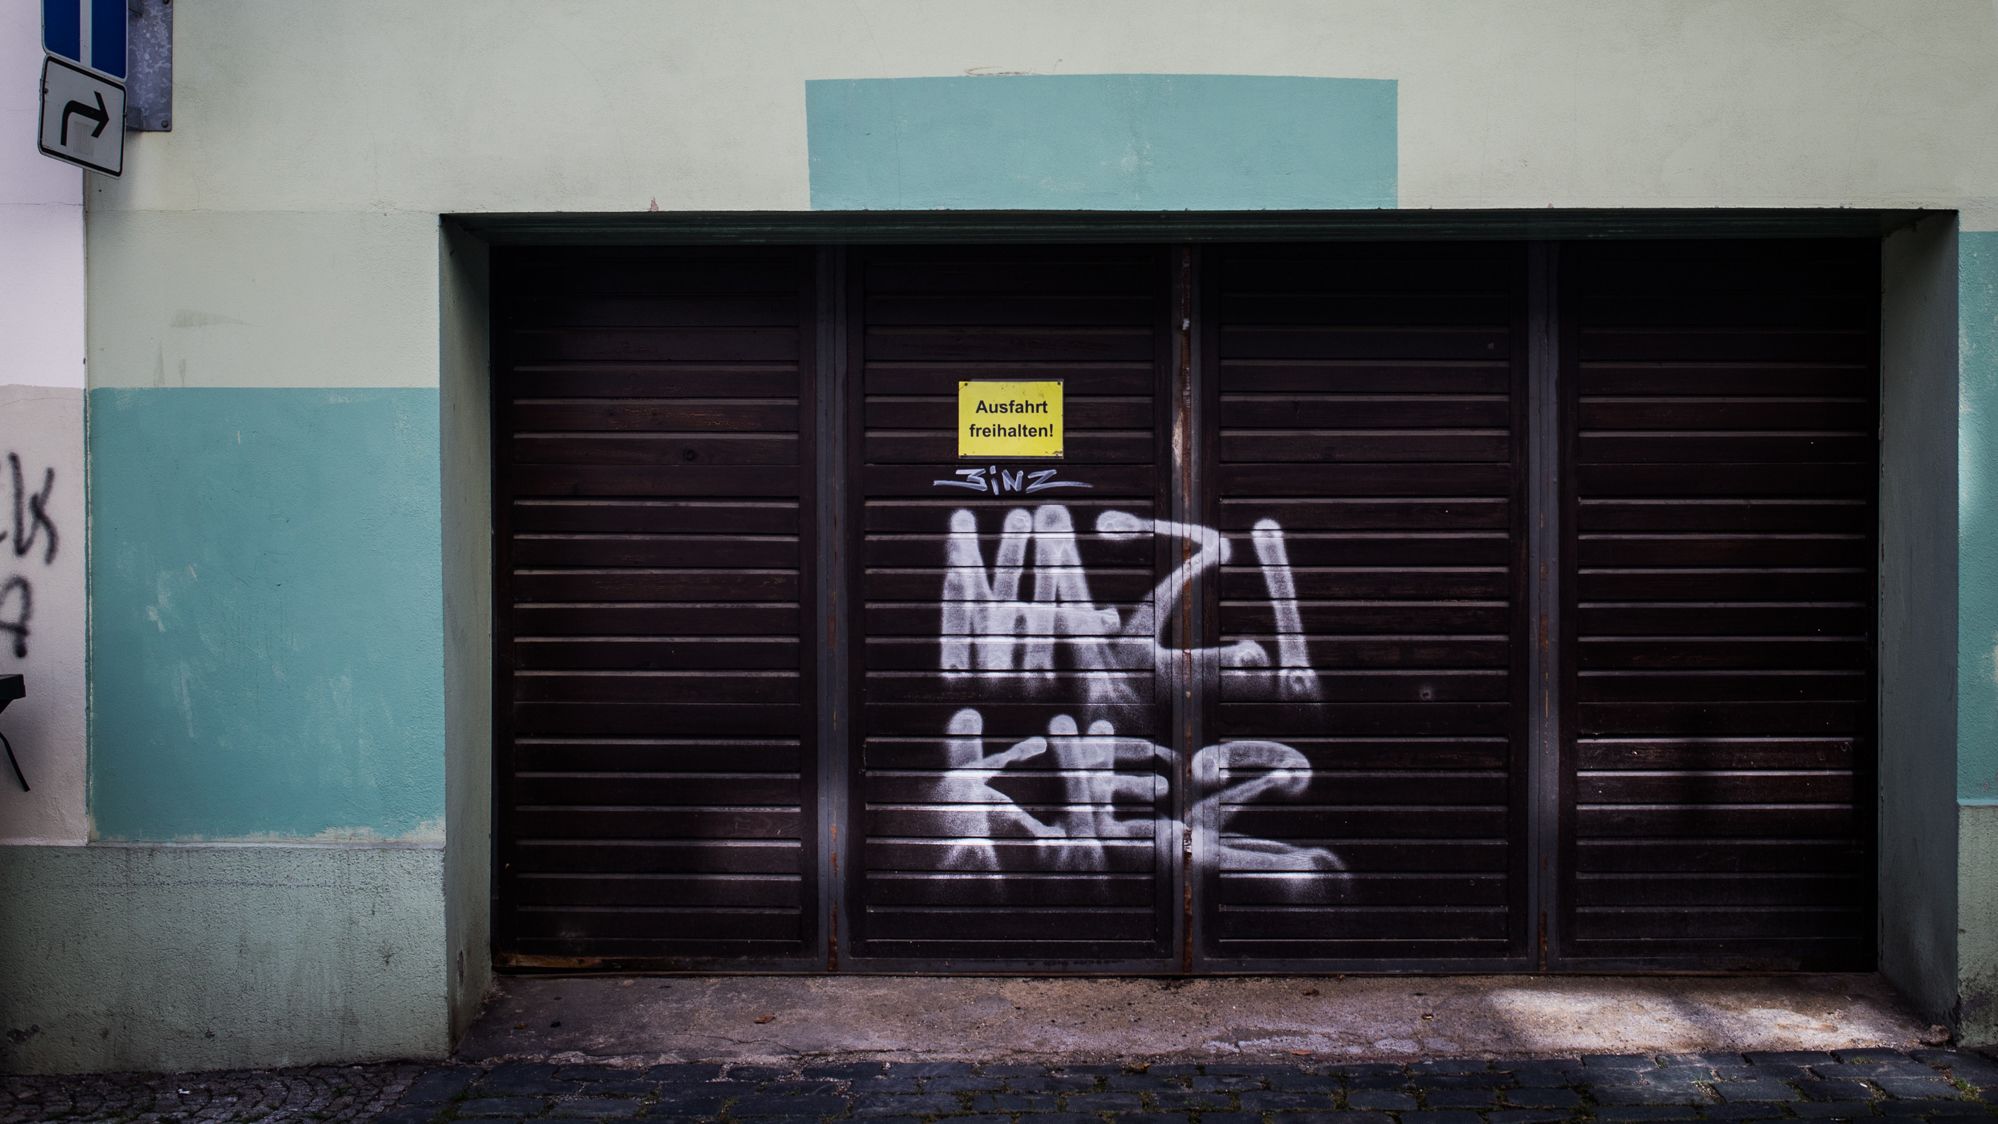 Neo-Nazi grafitti that reads "Nazi Kiez (Nazi neighborhood) is seen in Bautzen's town center.